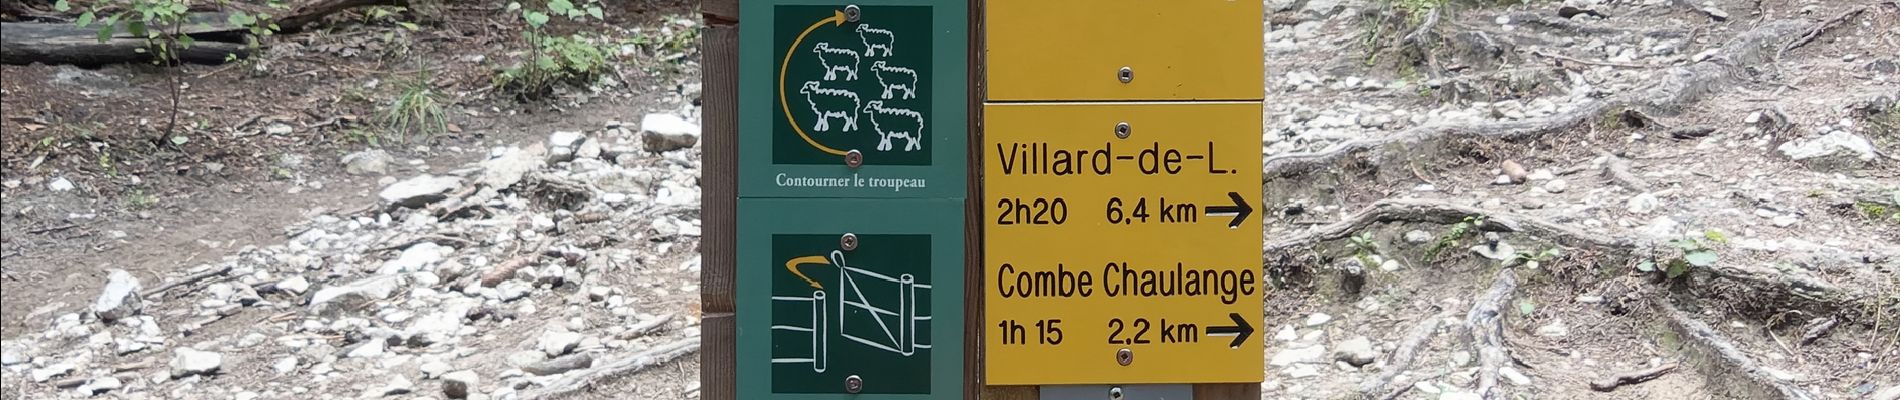 Randonnée Marche Villard-de-Lans - Le Pic Saint-Michel (Villard-de-Lans) - Photo